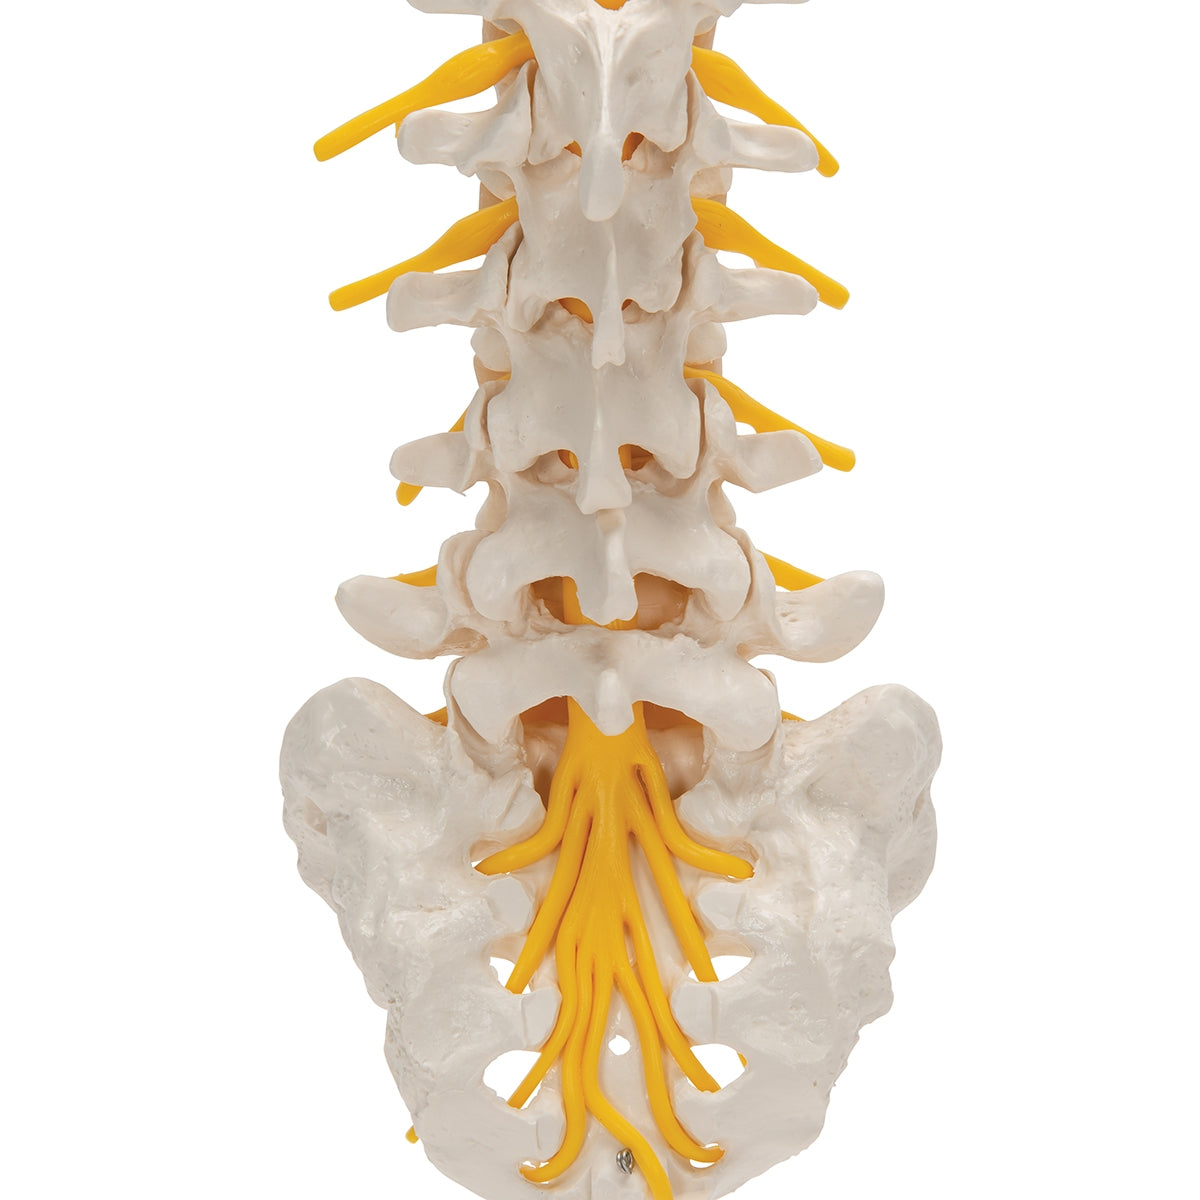 Lumbar Human Spinal Column Model